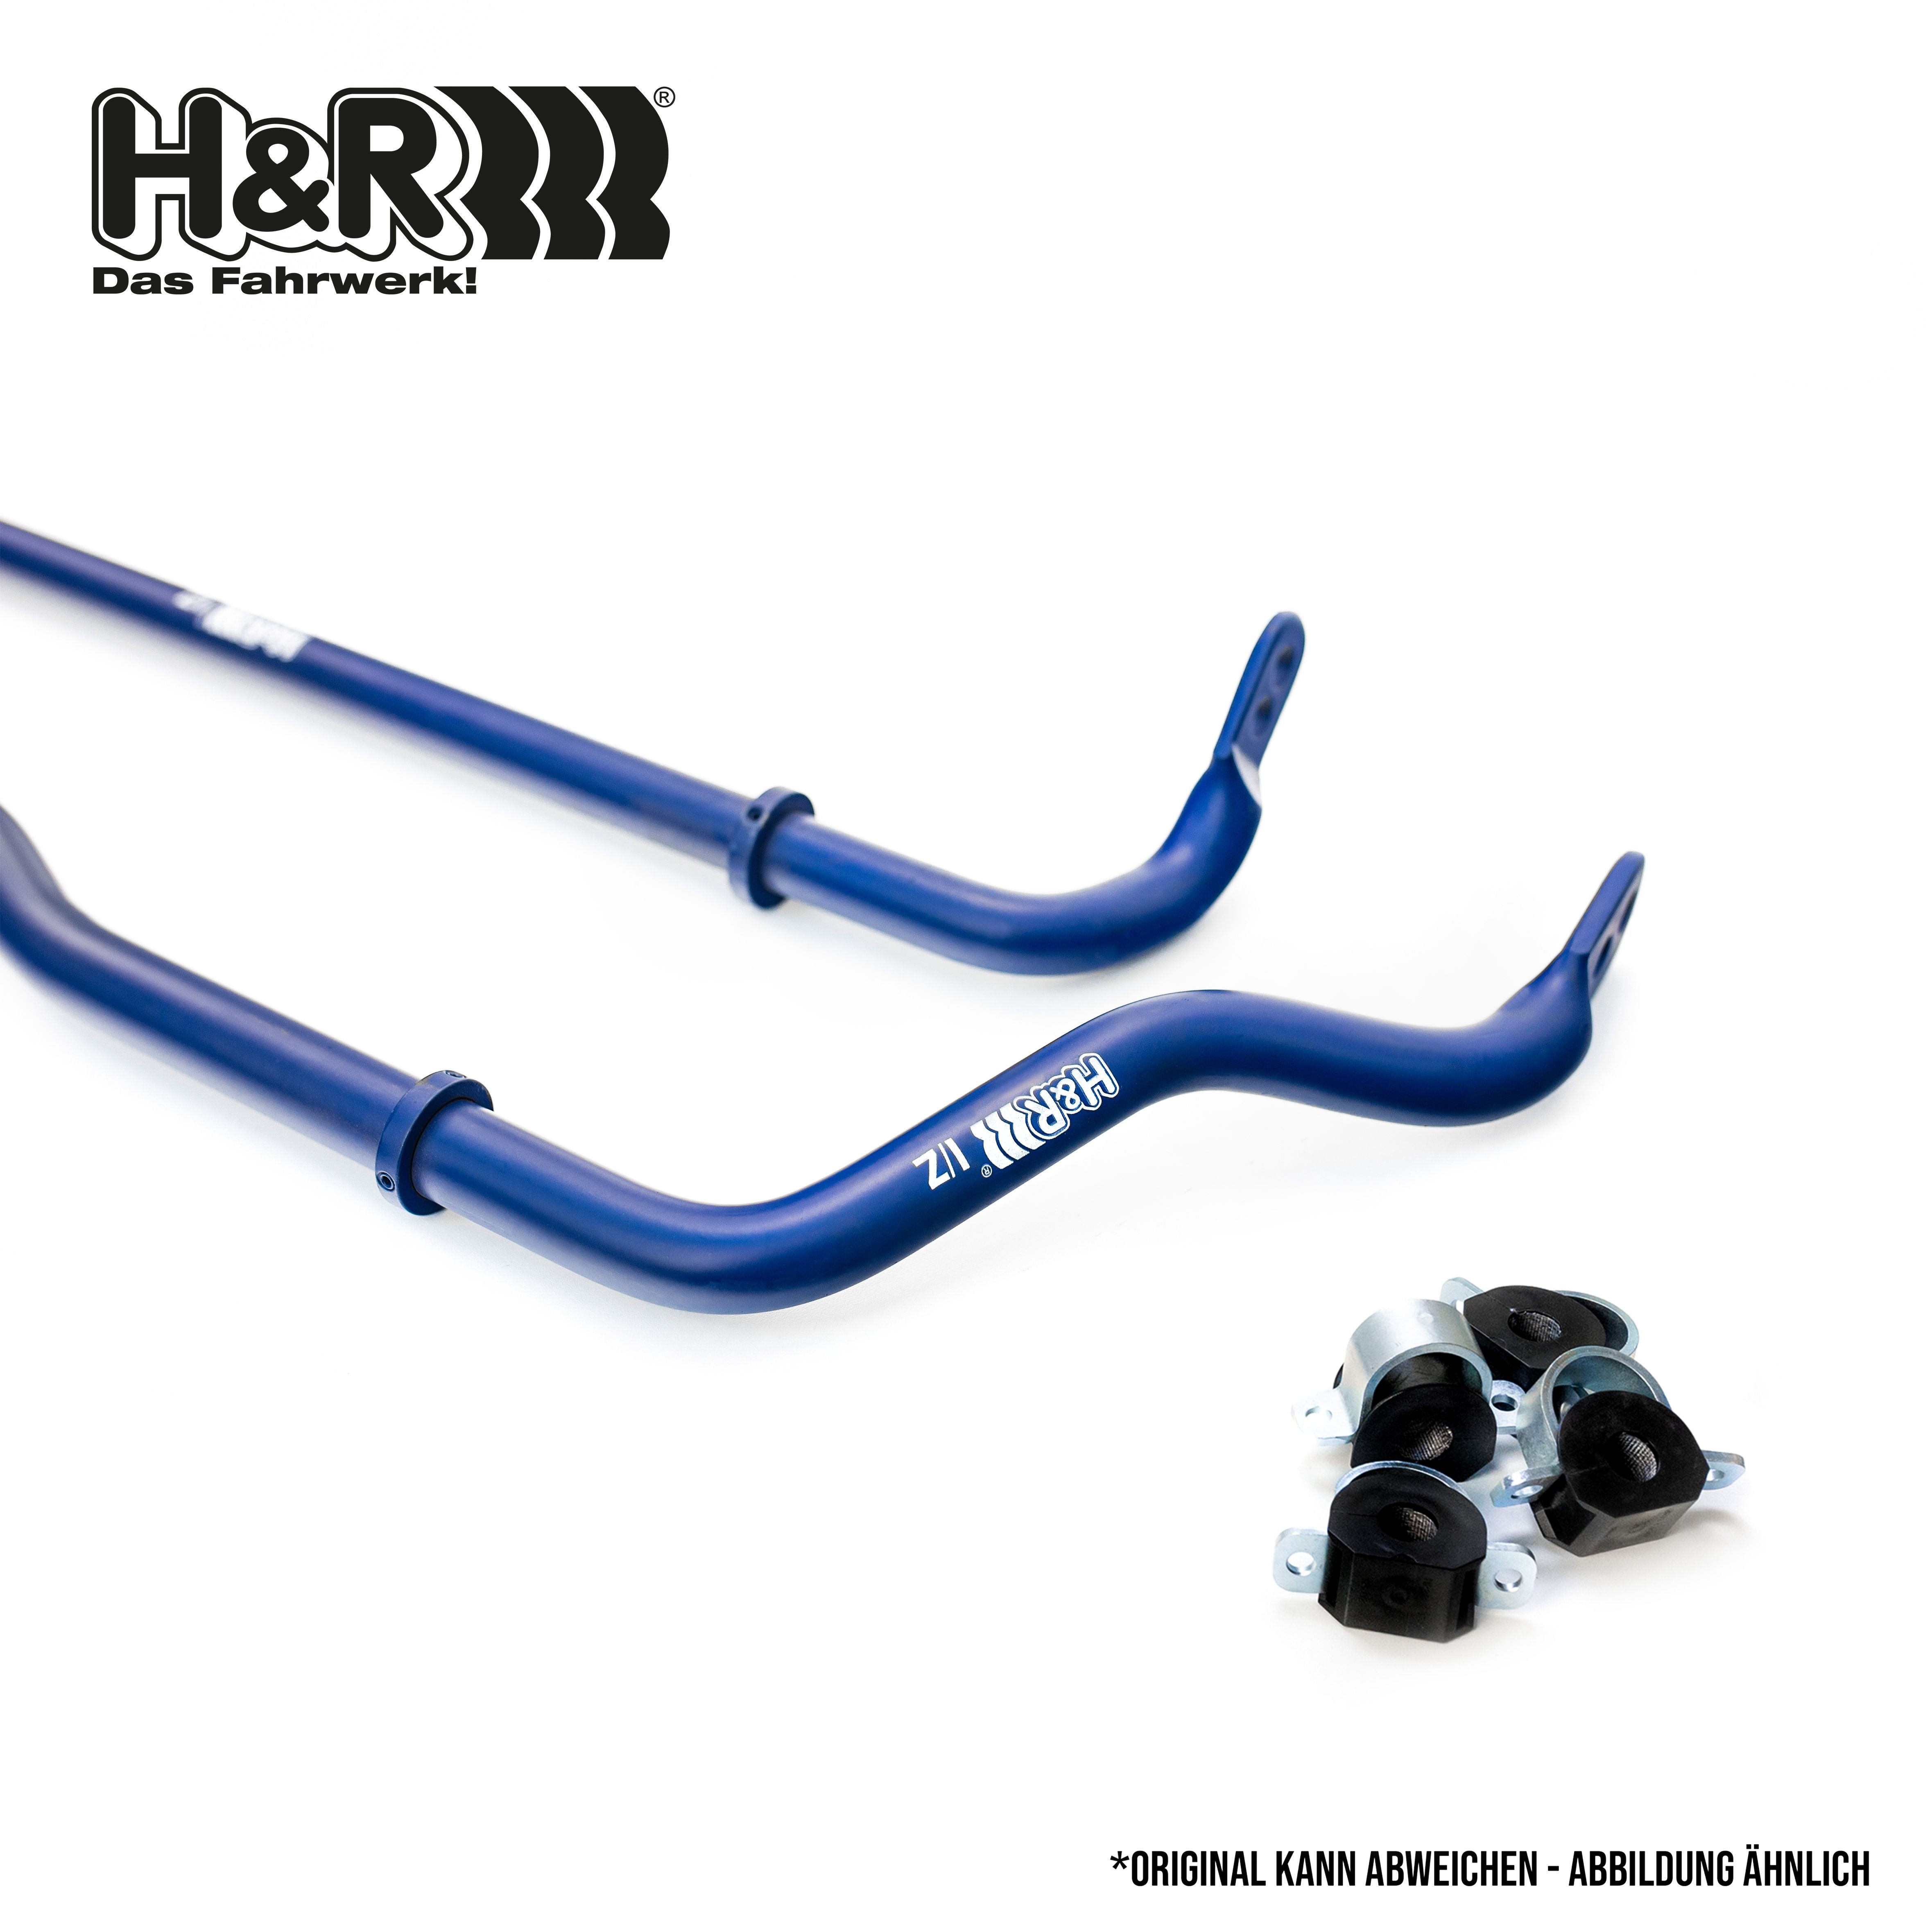 H&R Stabiliser Set 33749-1 buy